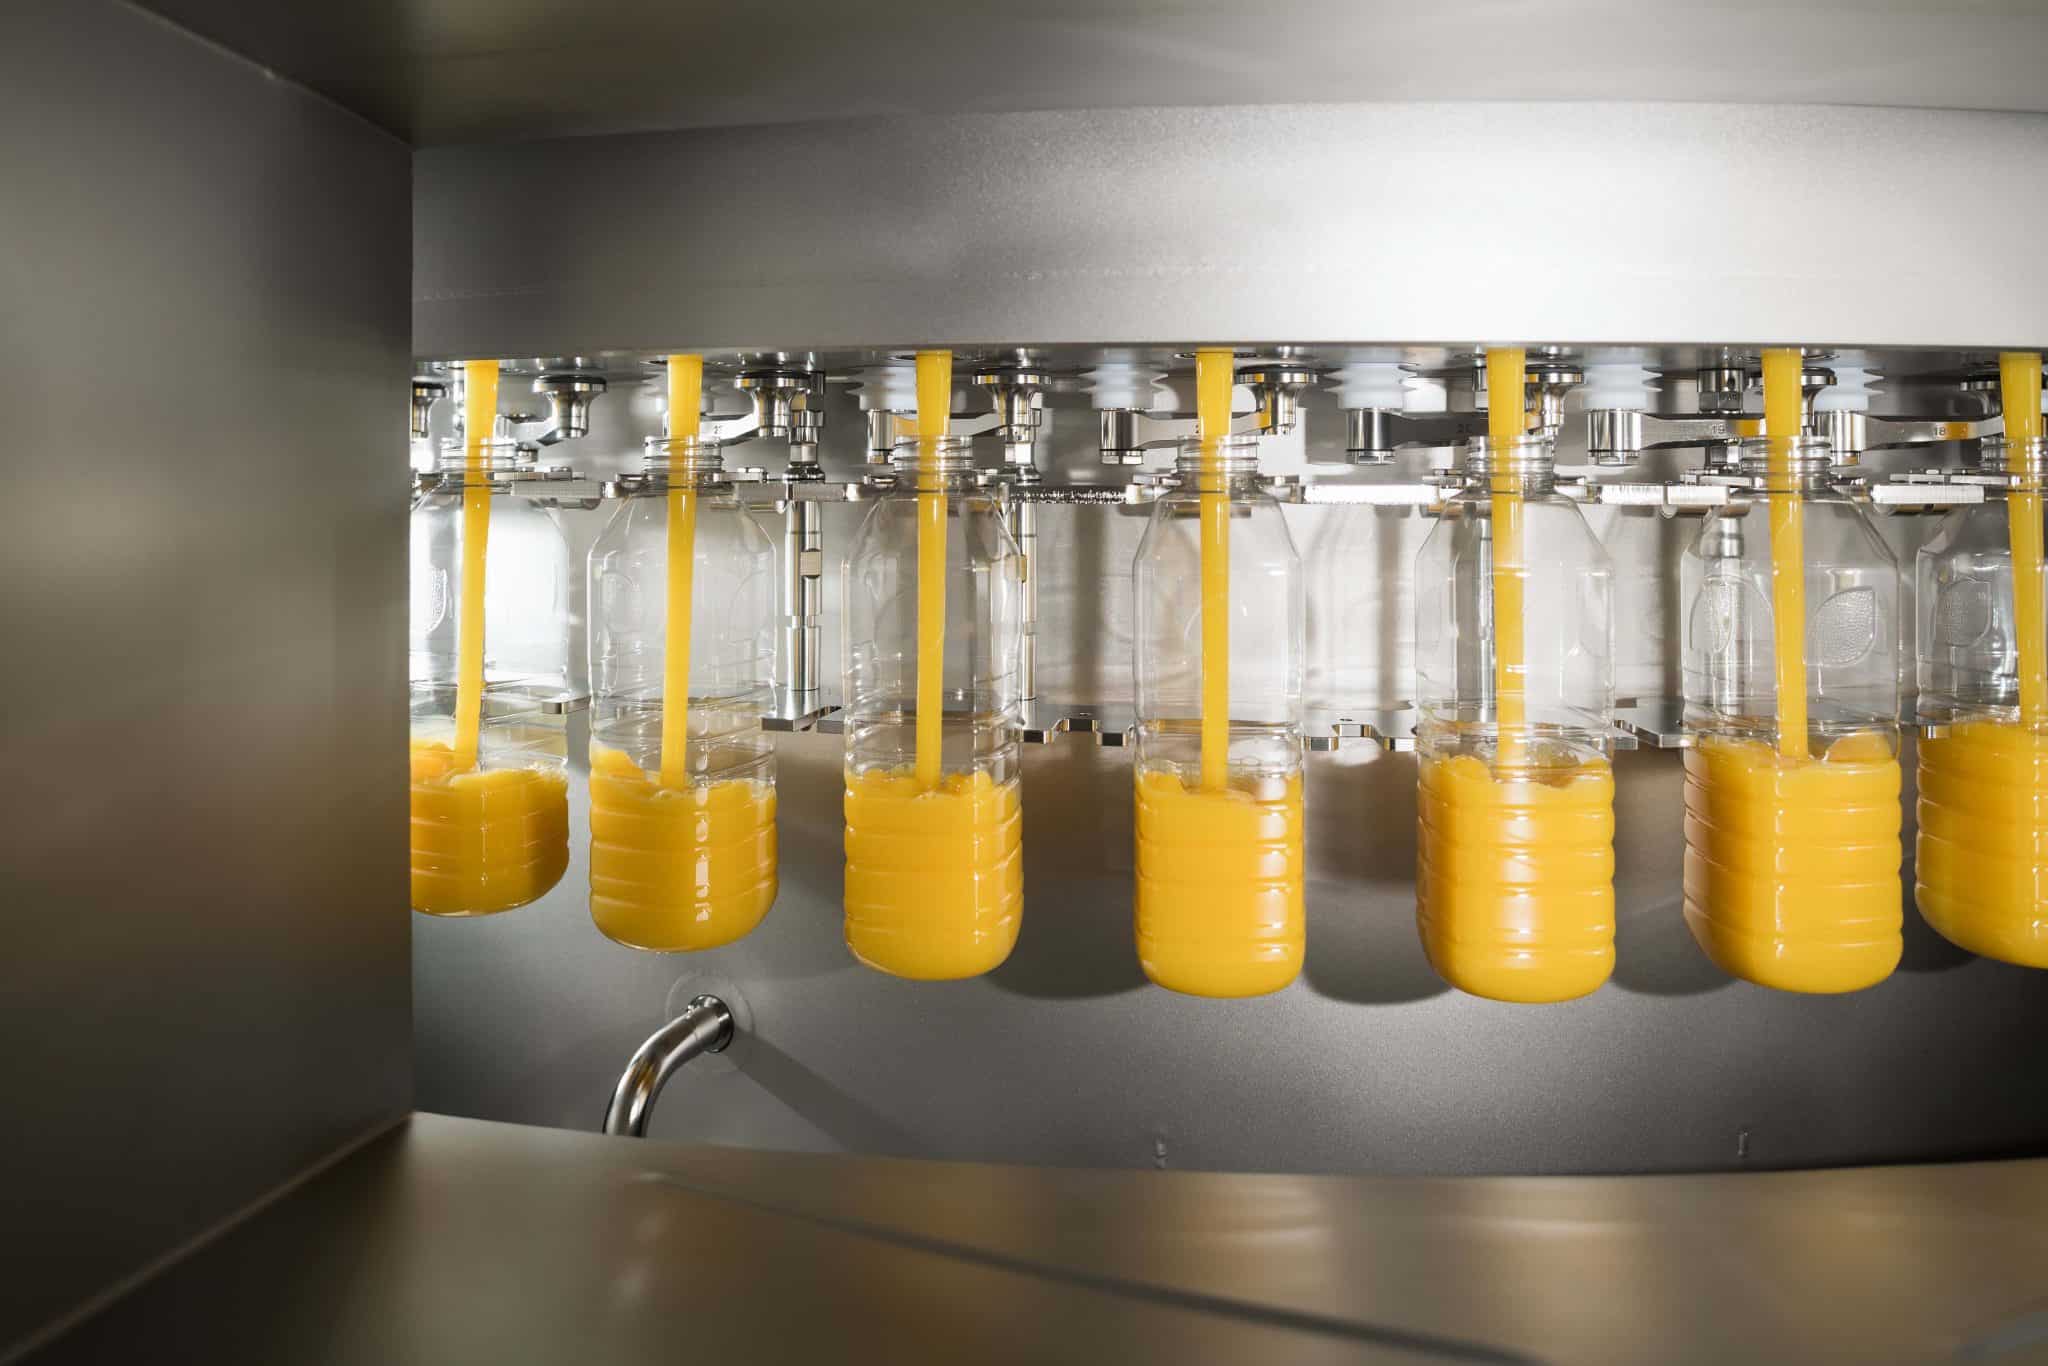 Texto alternativo: Na imagem há cinco garrafas de Natural One sendo abastecidas com sucos de laranja na fábrica.